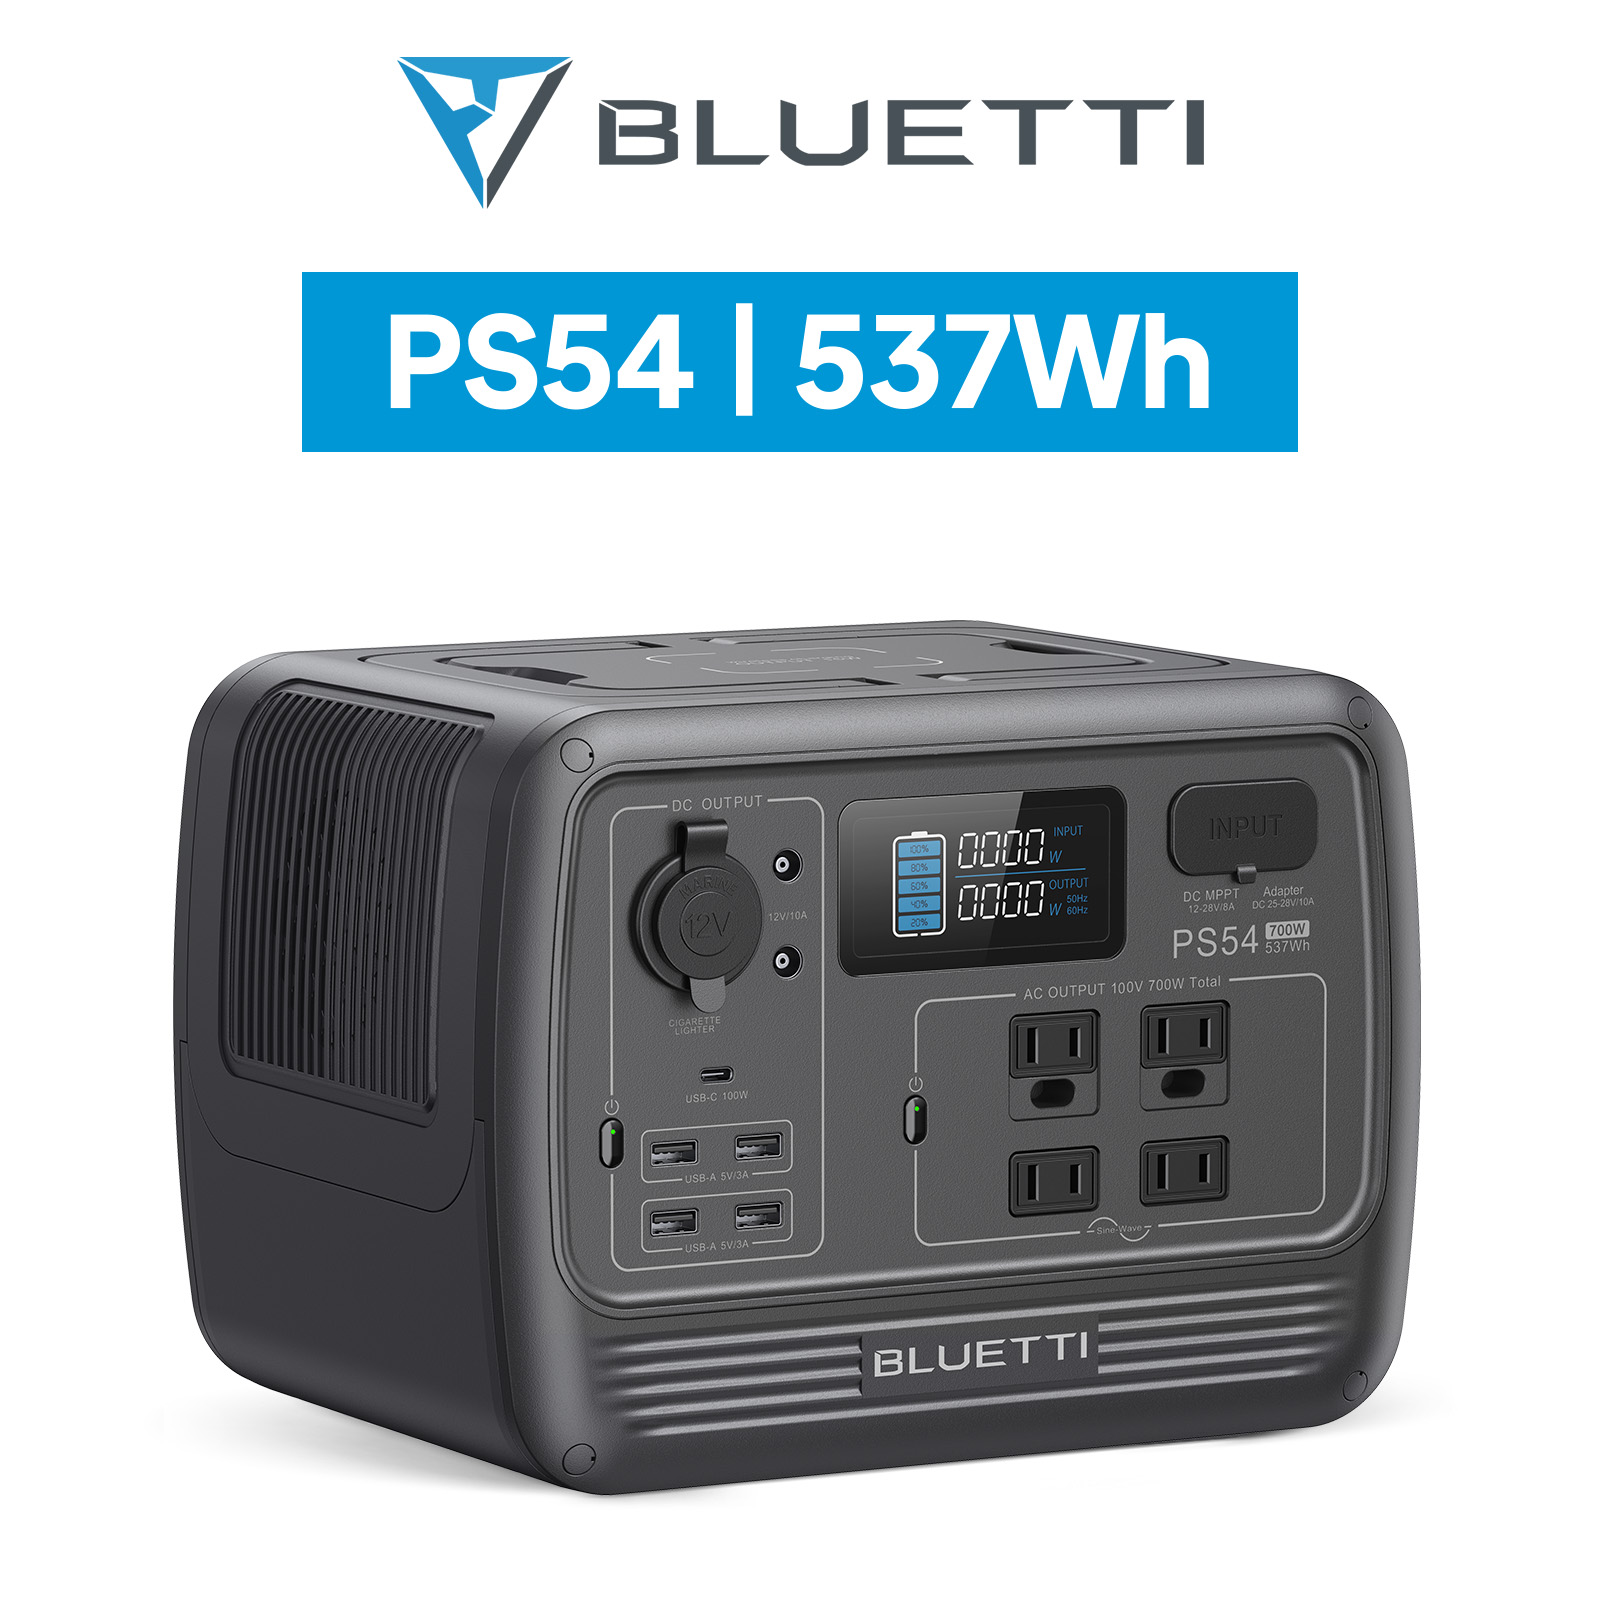 BLUETTI ポータブル電源 PS54 537Wh/700W 小型軽量 家庭用 蓄電池 2年 